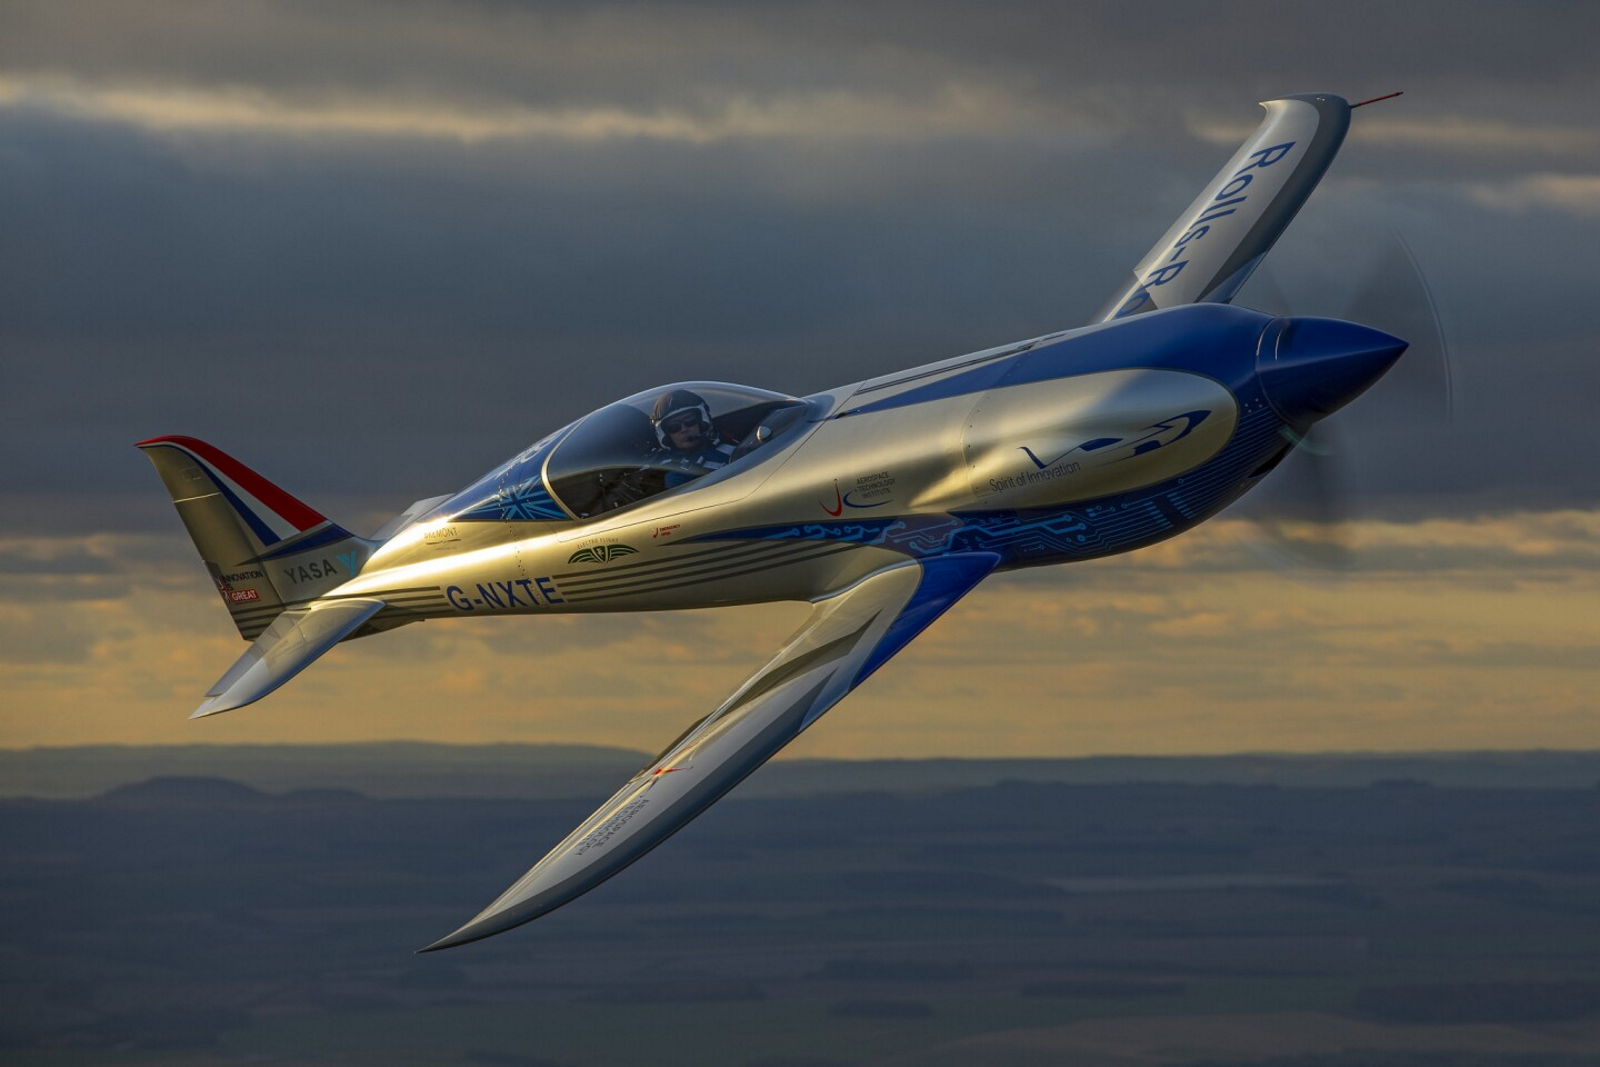 Le Spirit of Innovation lors de son vol d’essai. © Rolls-Royce